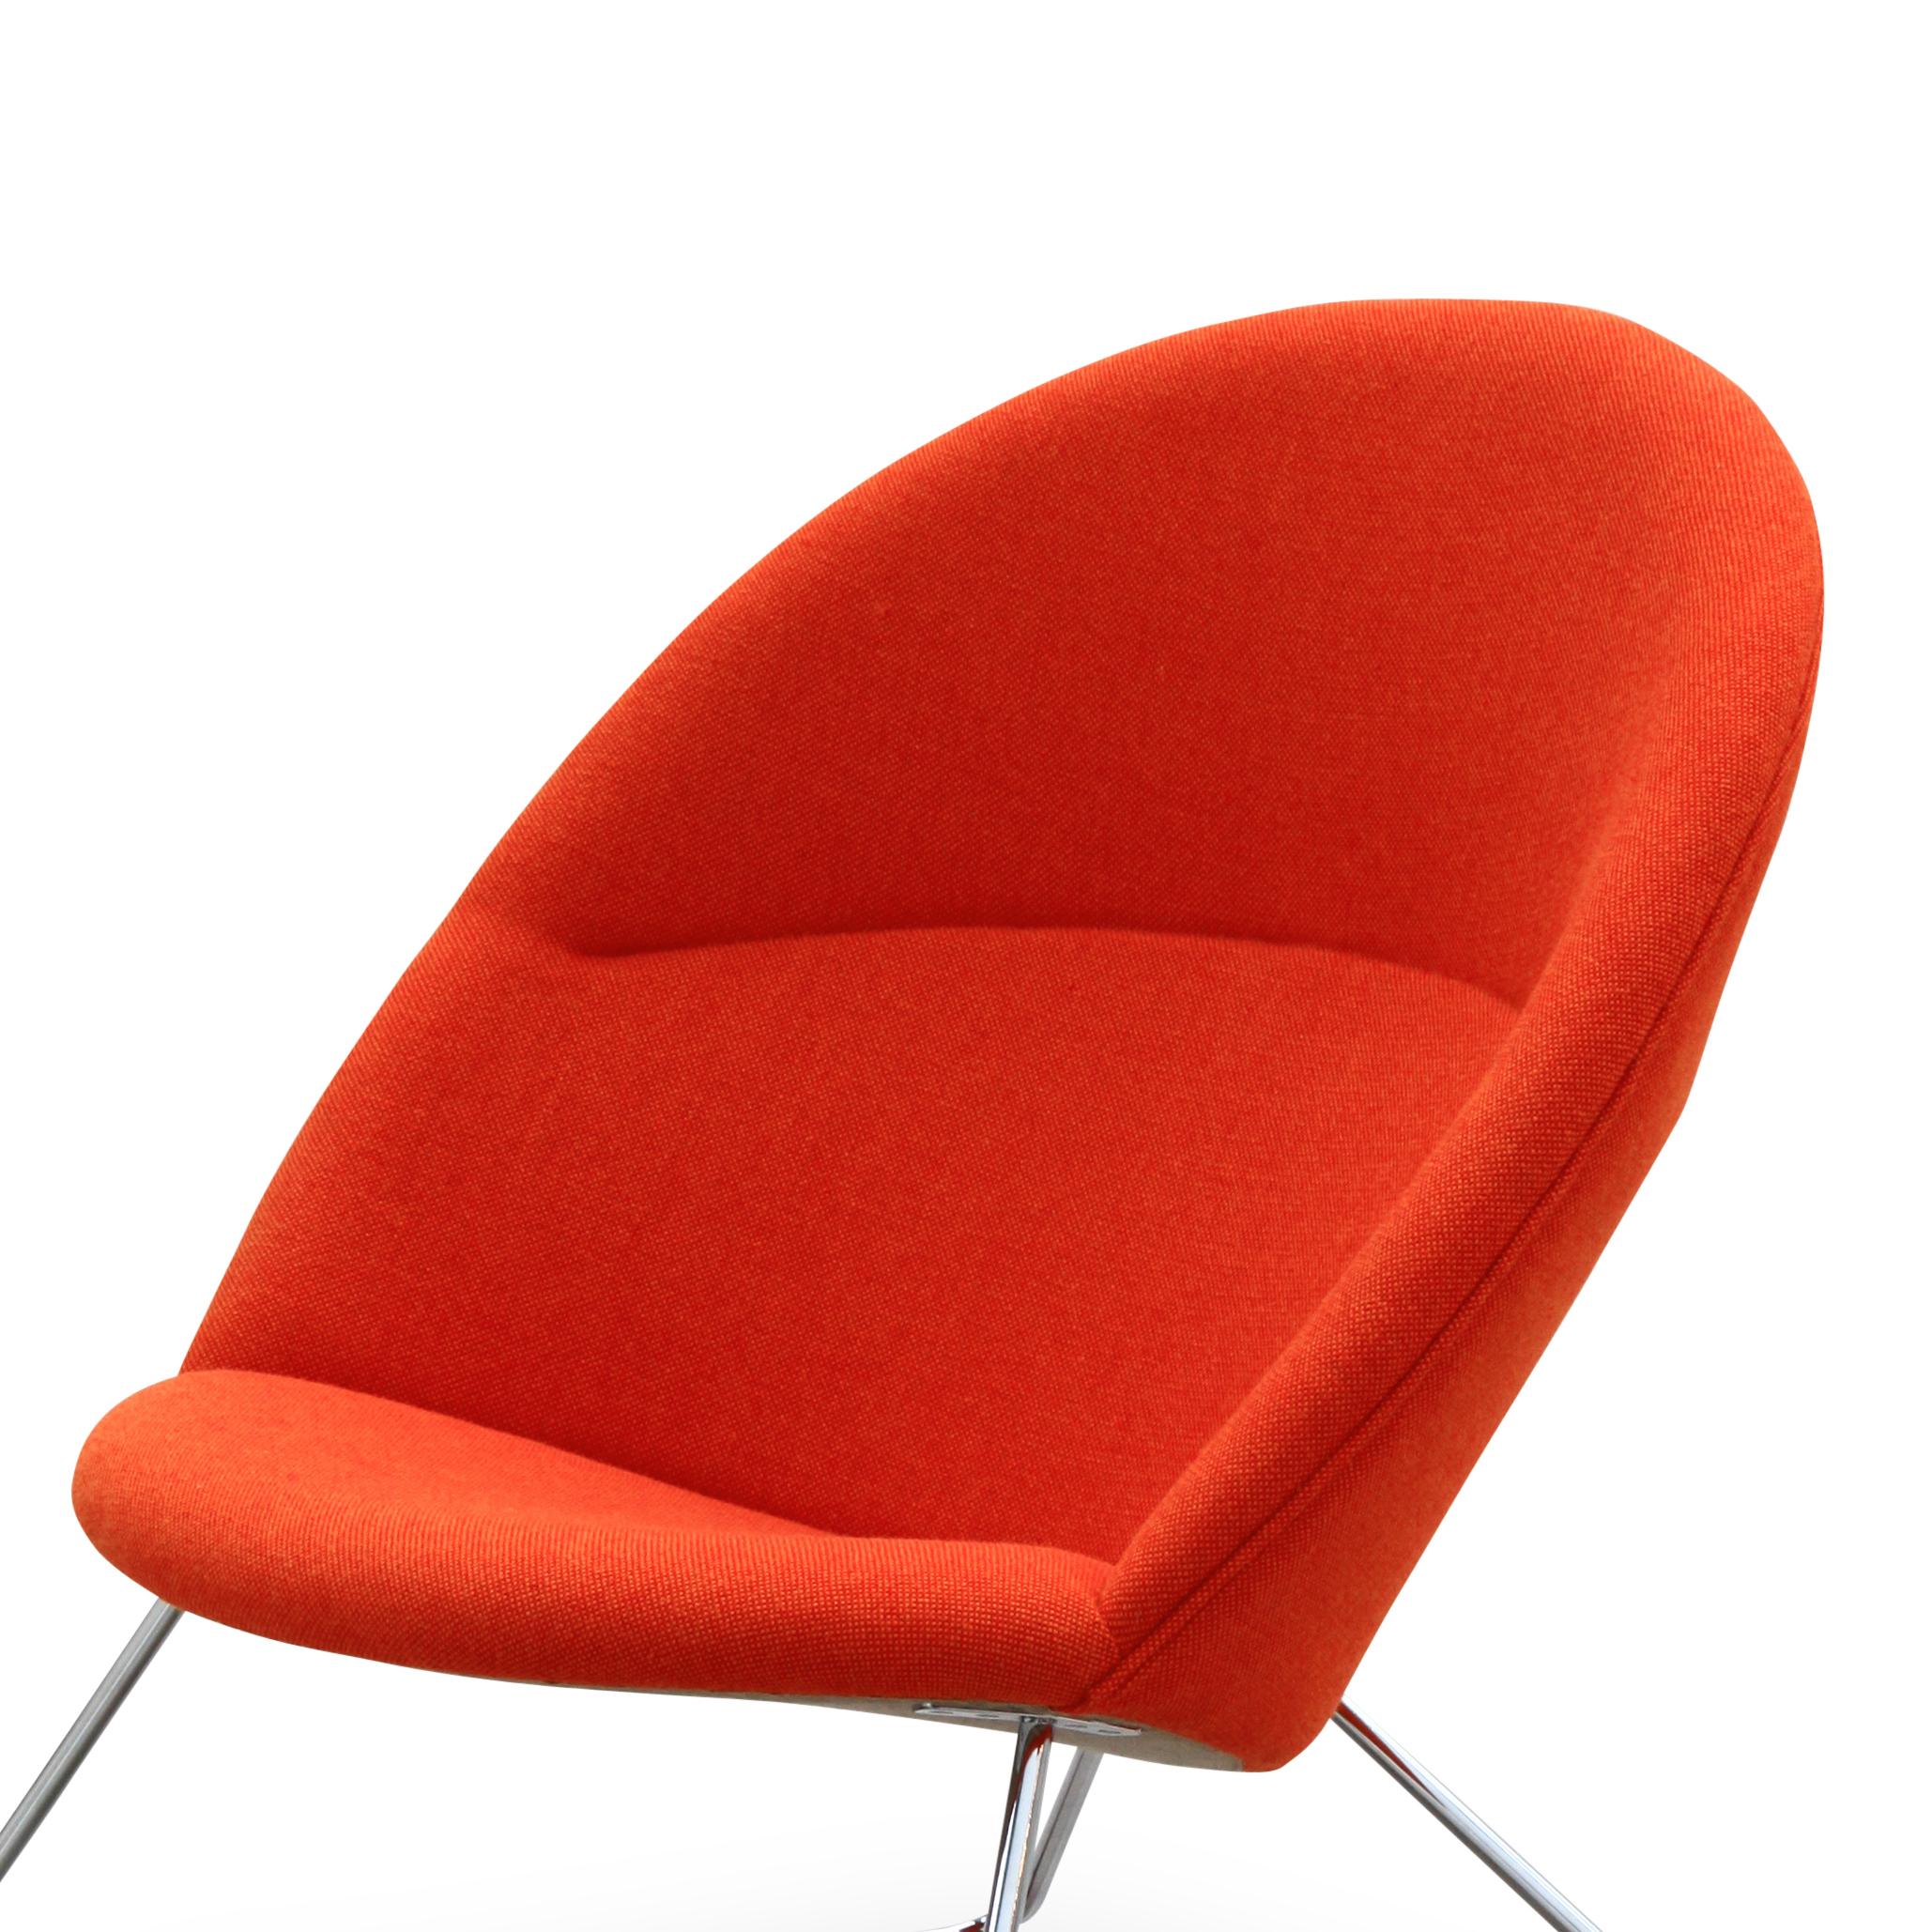 One Collection hat den Sessel Dennie, der 1956 von Nanna und Jørgen Ditzel für Fritz Hansen entworfen wurde, neu aufgelegt. Der Dennie-Stuhl wird durch einen Fußhocker und einen kleinen Tisch ergänzt.

Nanna Ditzel, eine der einflussreichsten